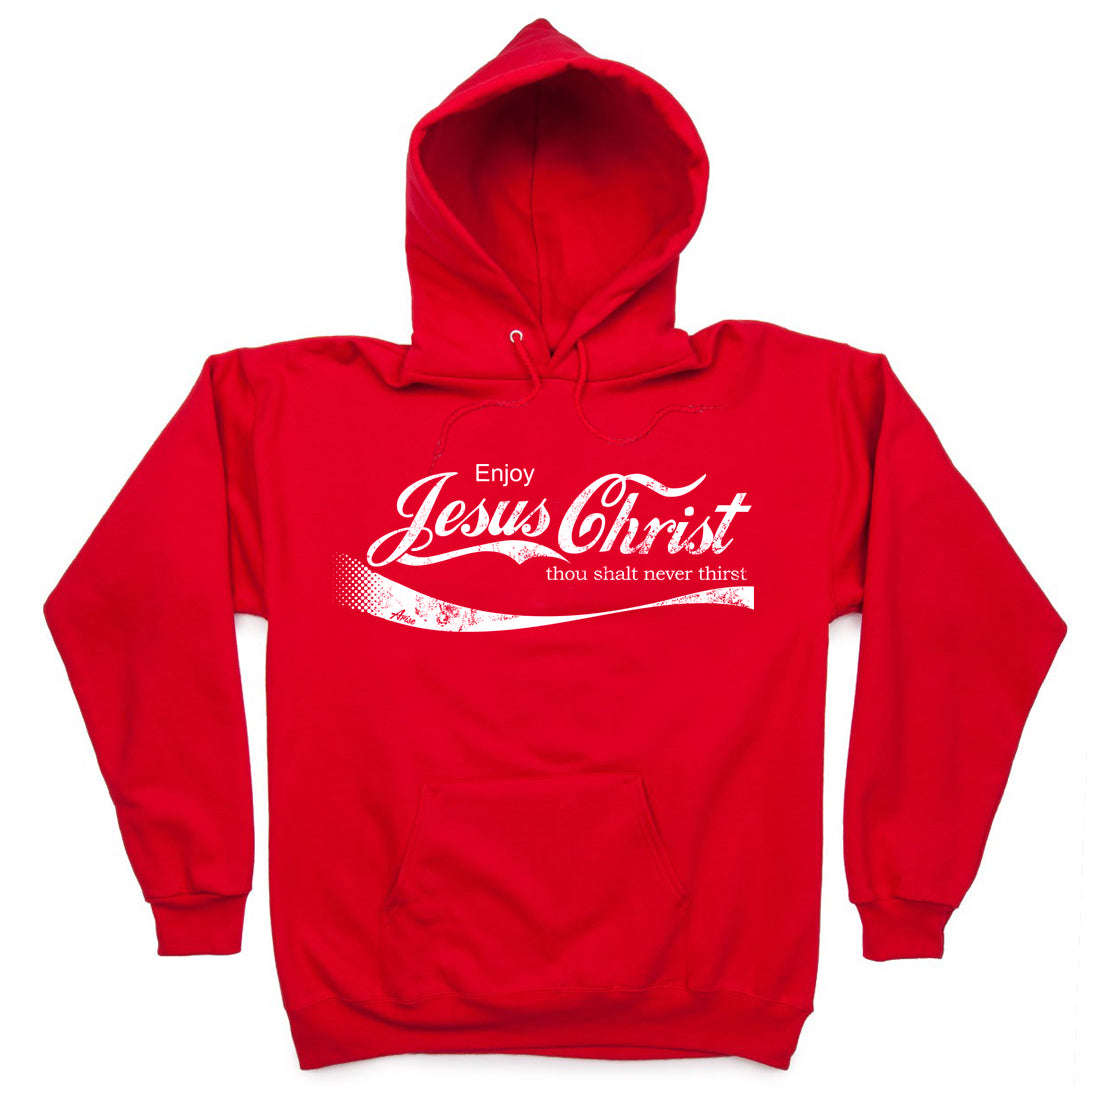 enjoy Jesus Christ hoodie